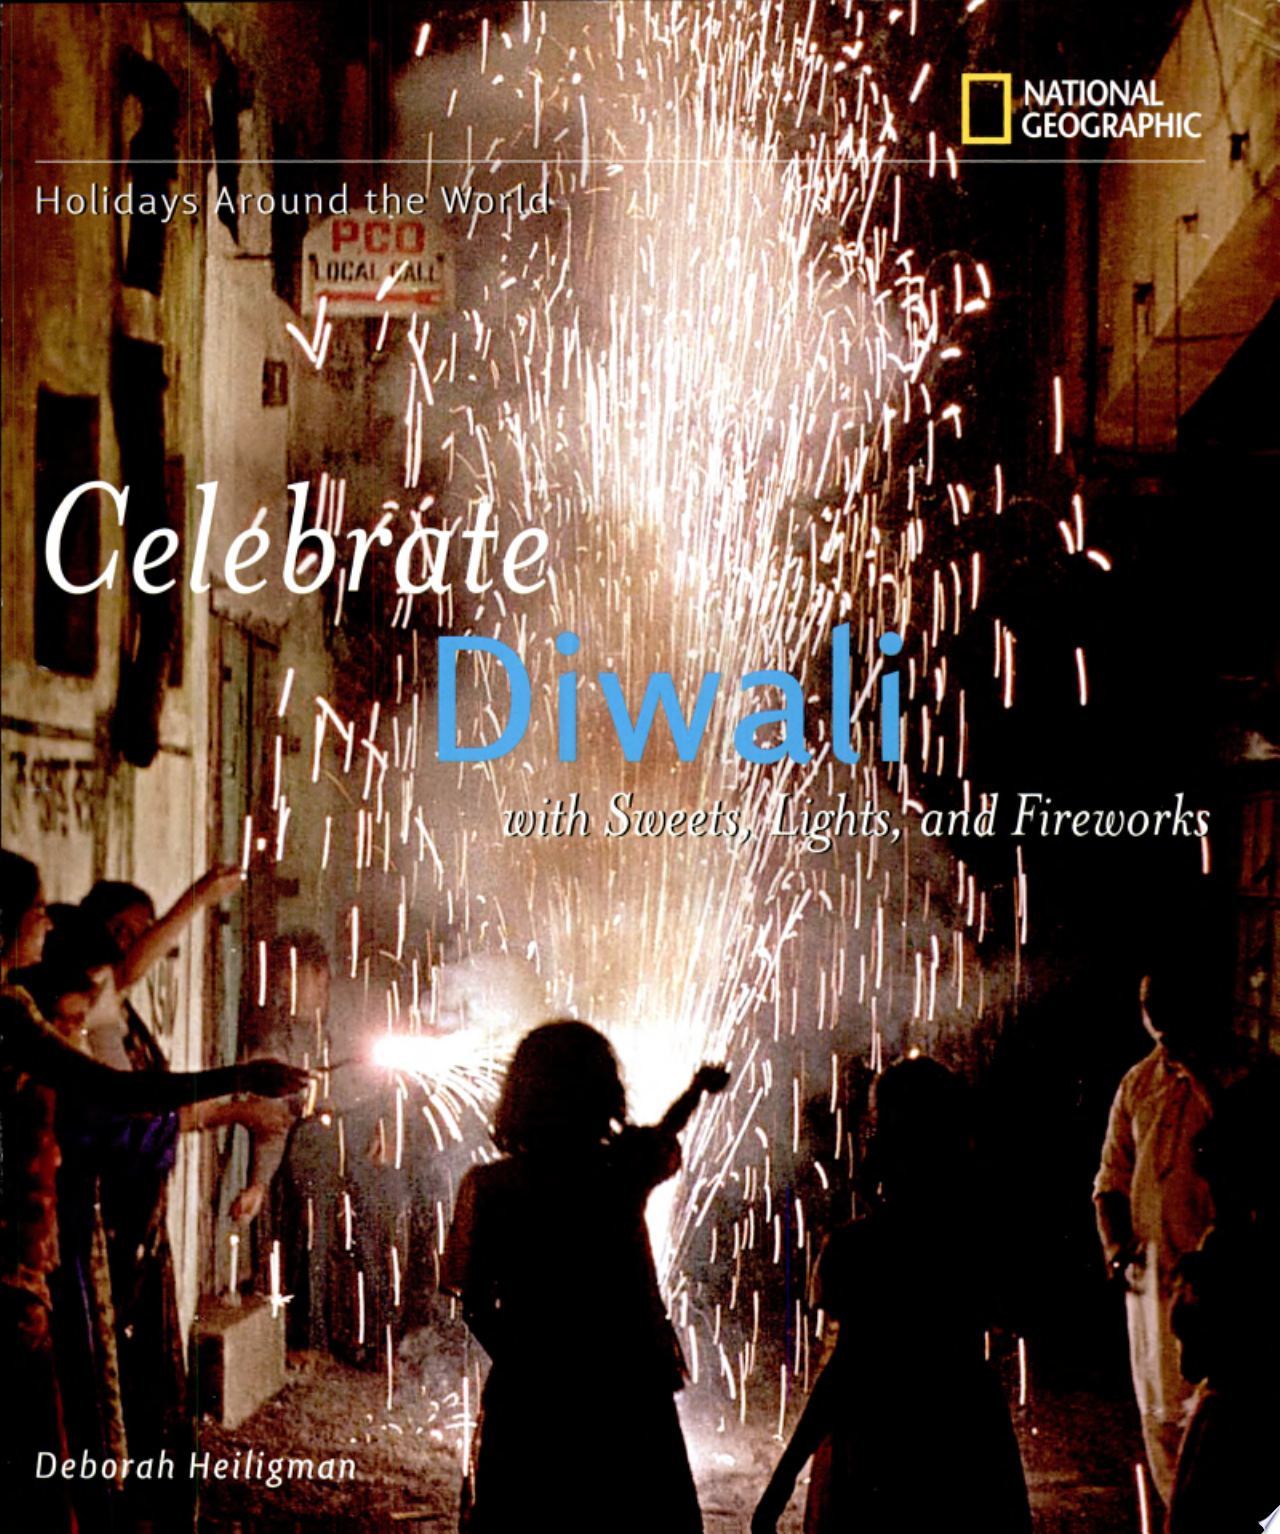 Image for "Celebrate Diwali"